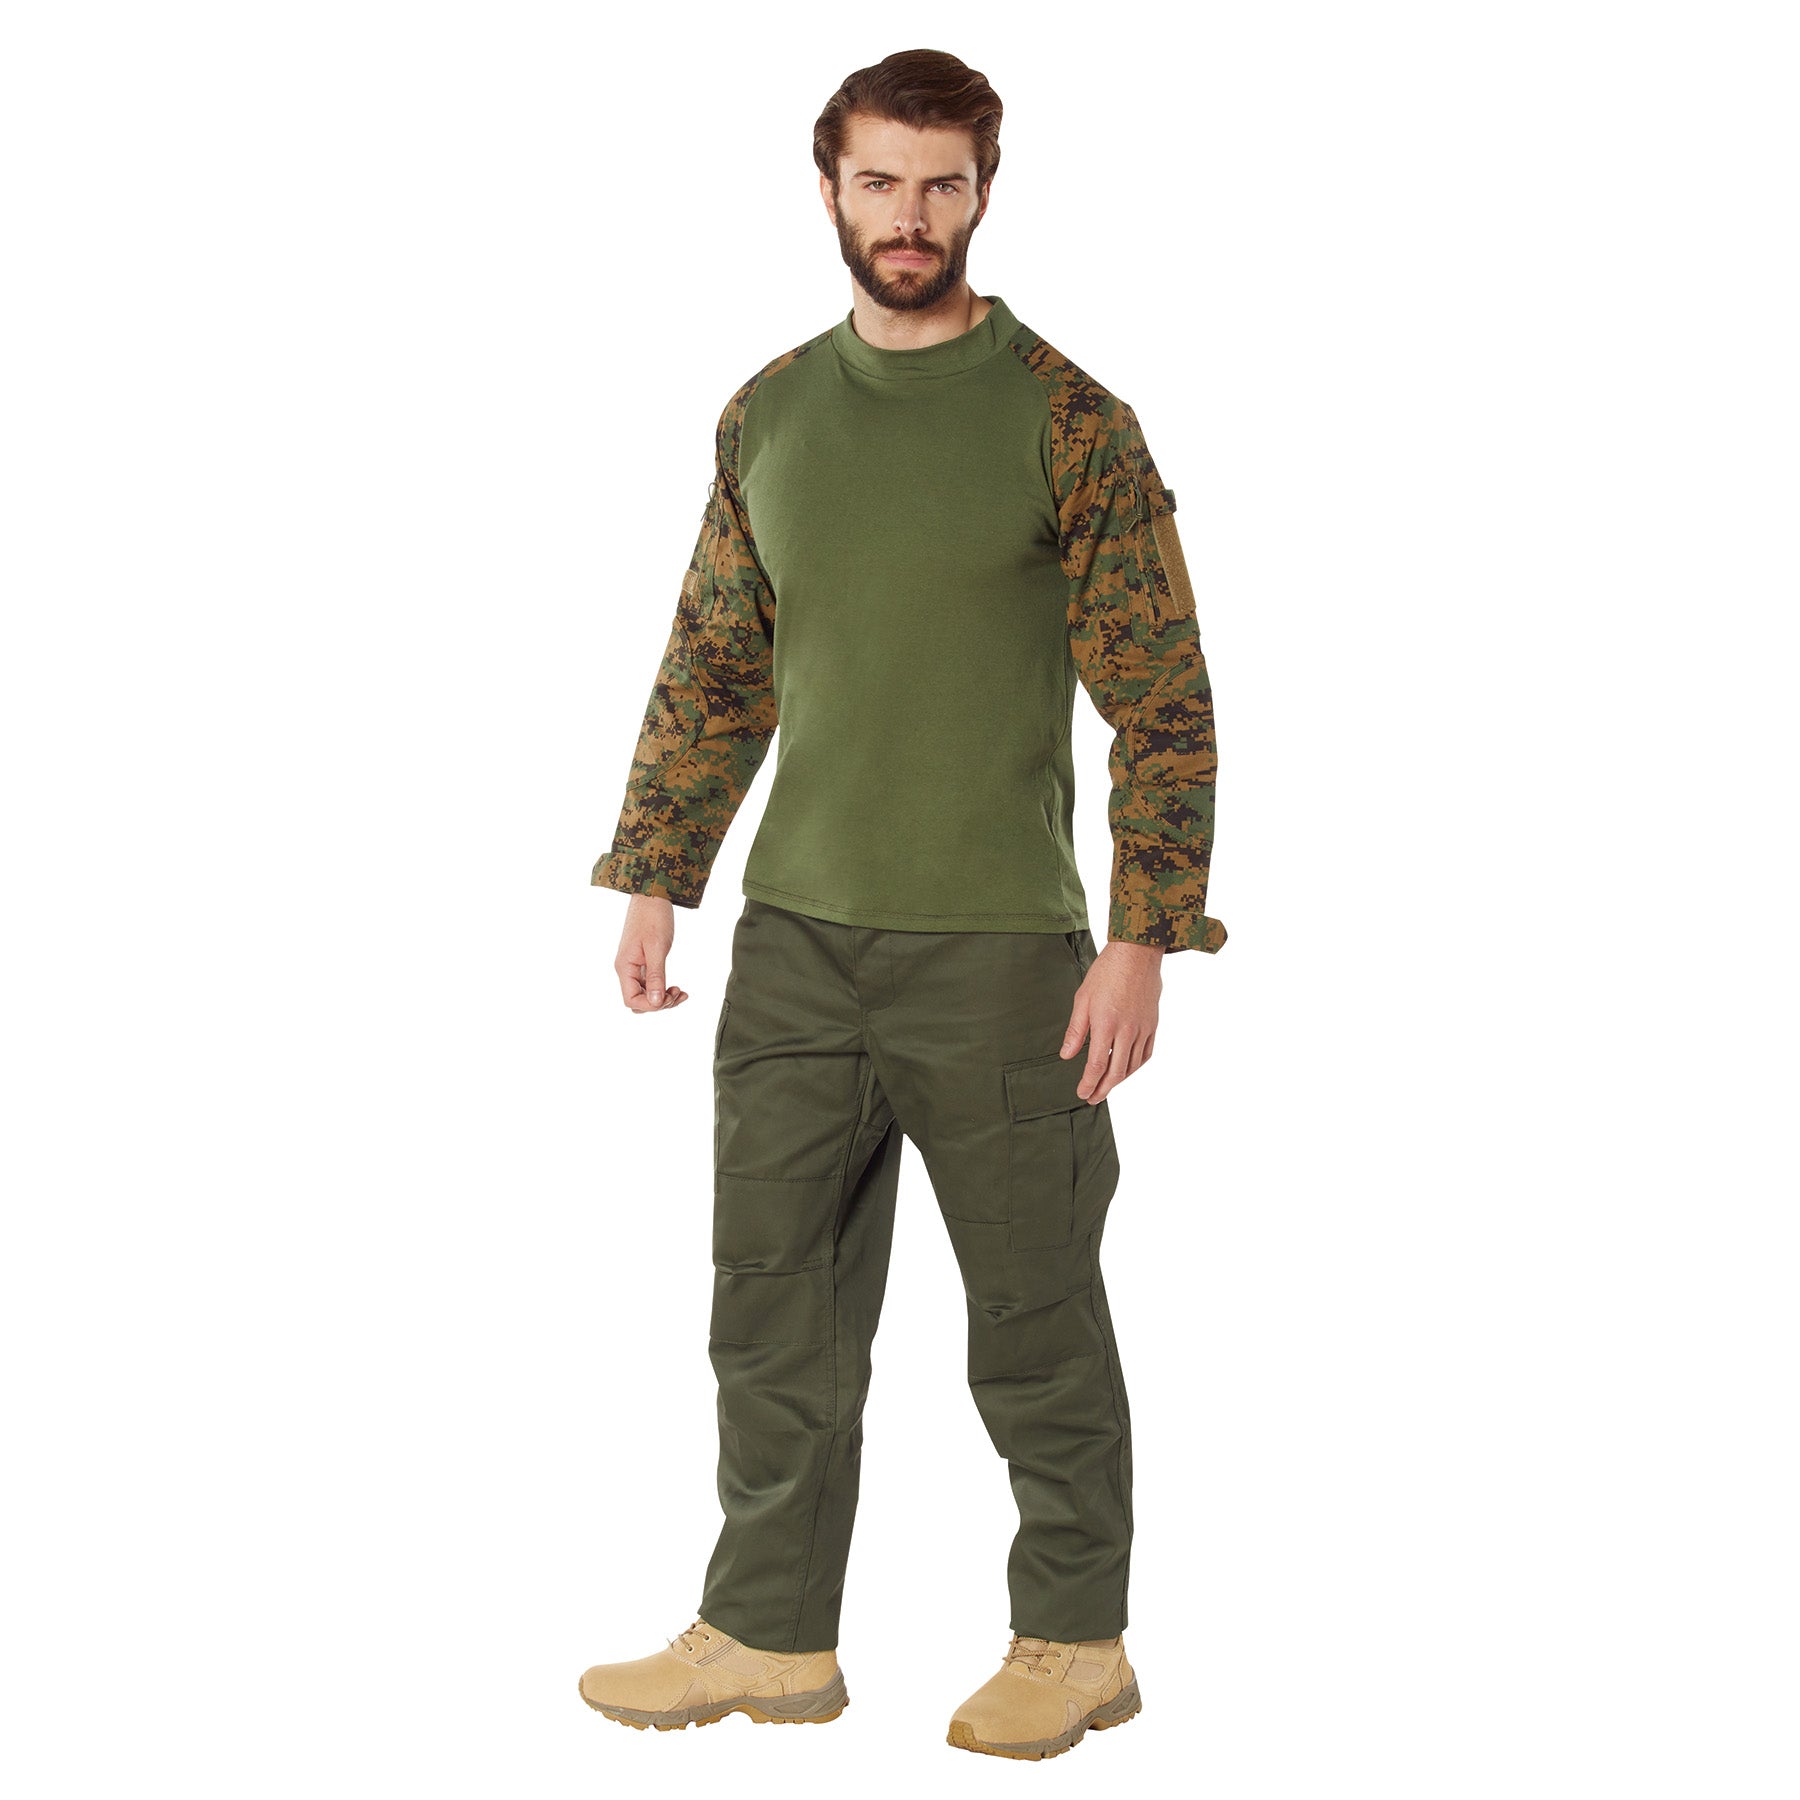 Digital Camo Poly/Cotton Tactical Combat Shirts